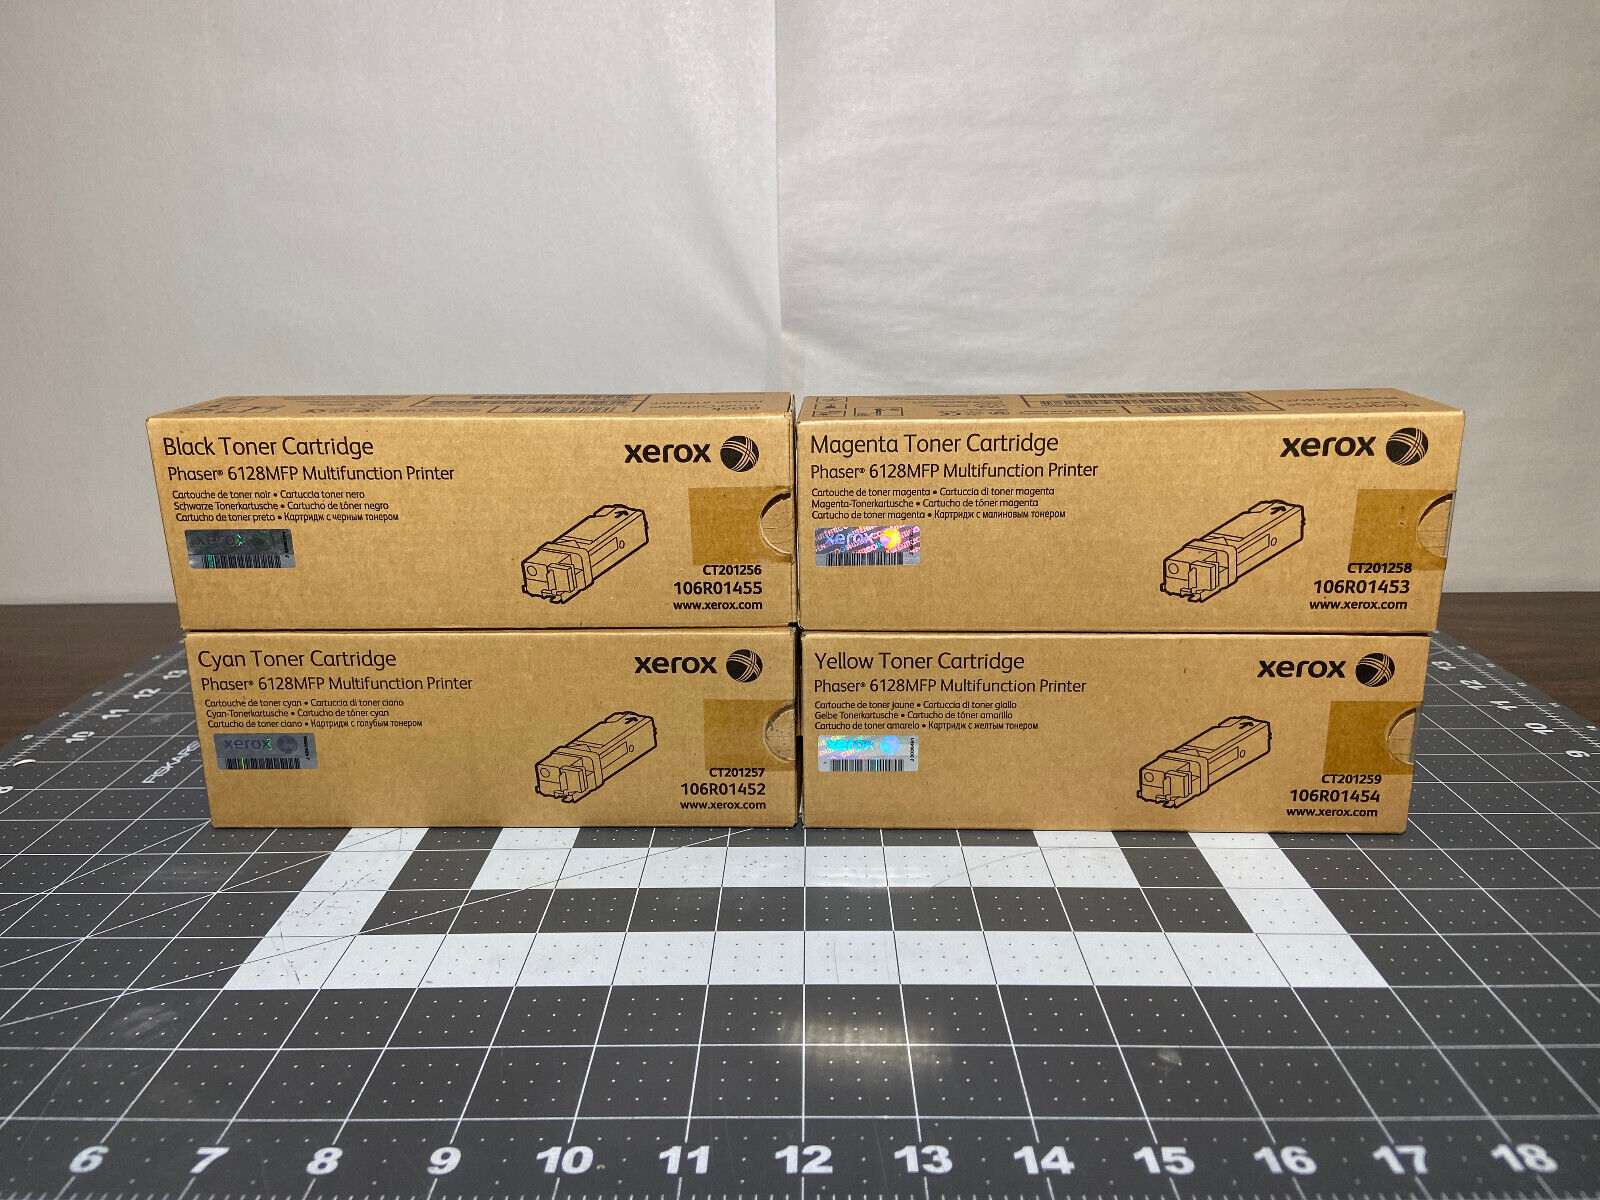 NEW / Genuine Xerox Phaser 6128 toner Cartridges  Black, Cyan, Mangenta, Yellow